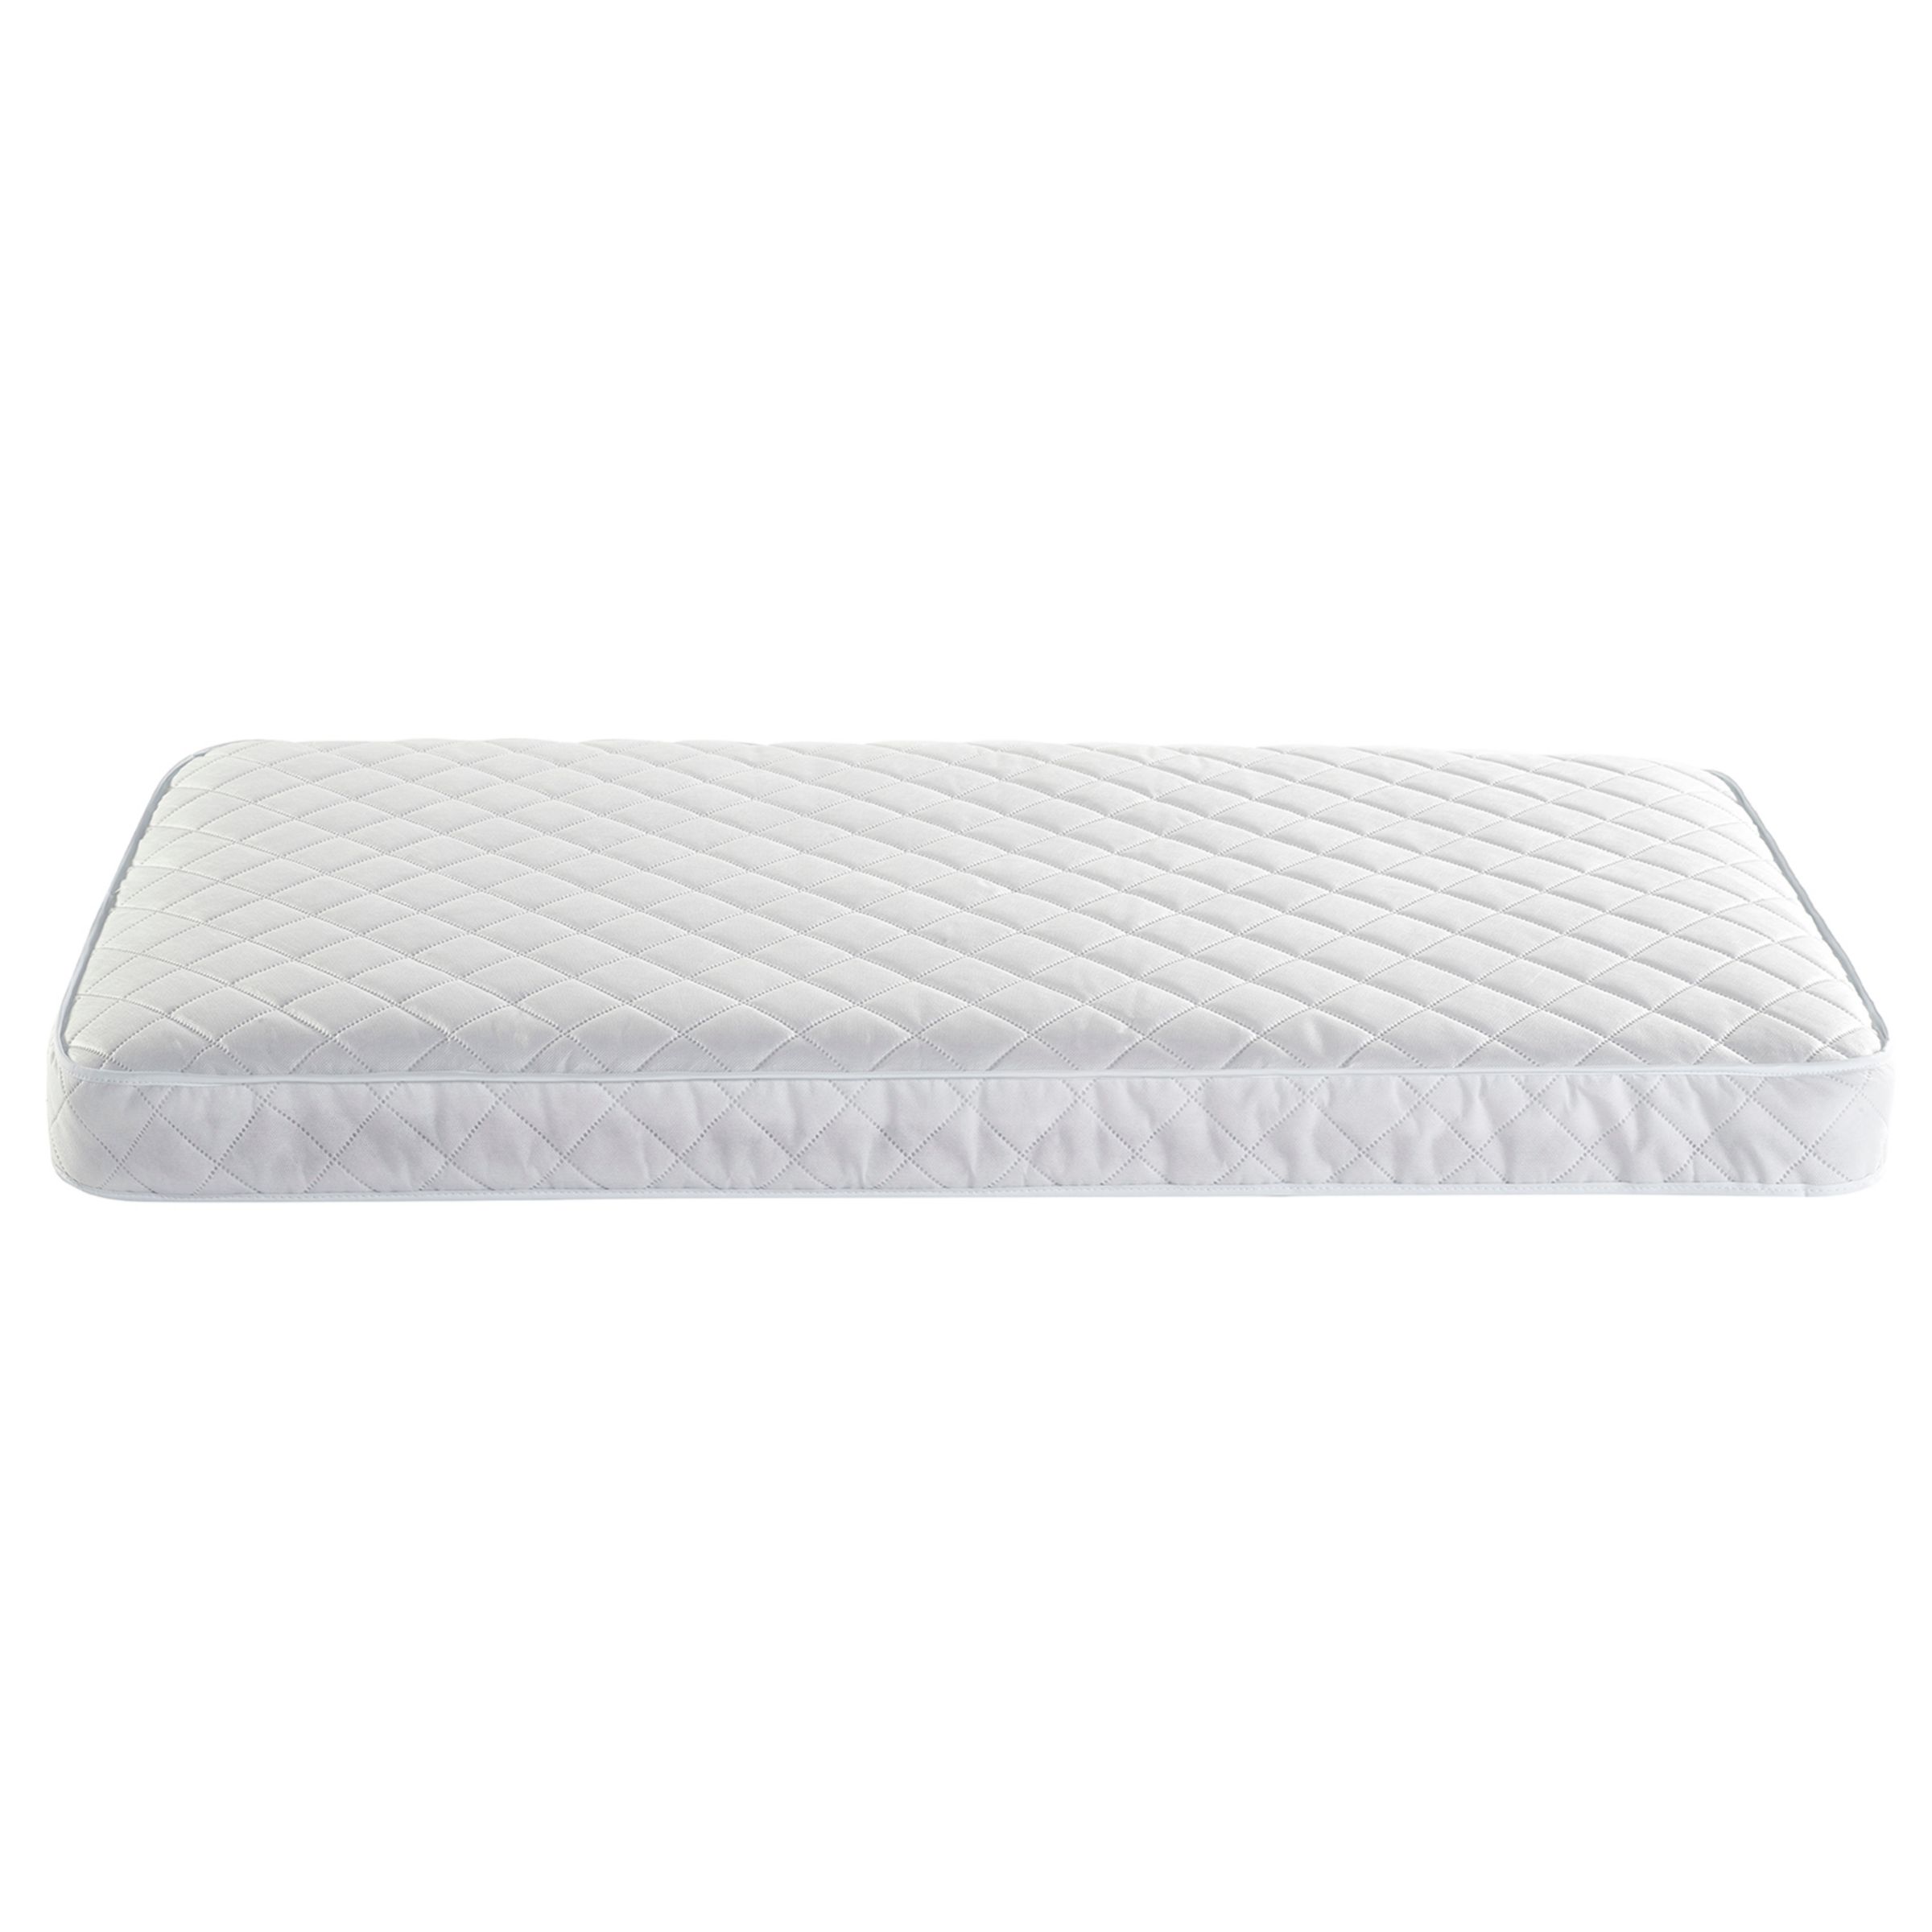 boori mattress